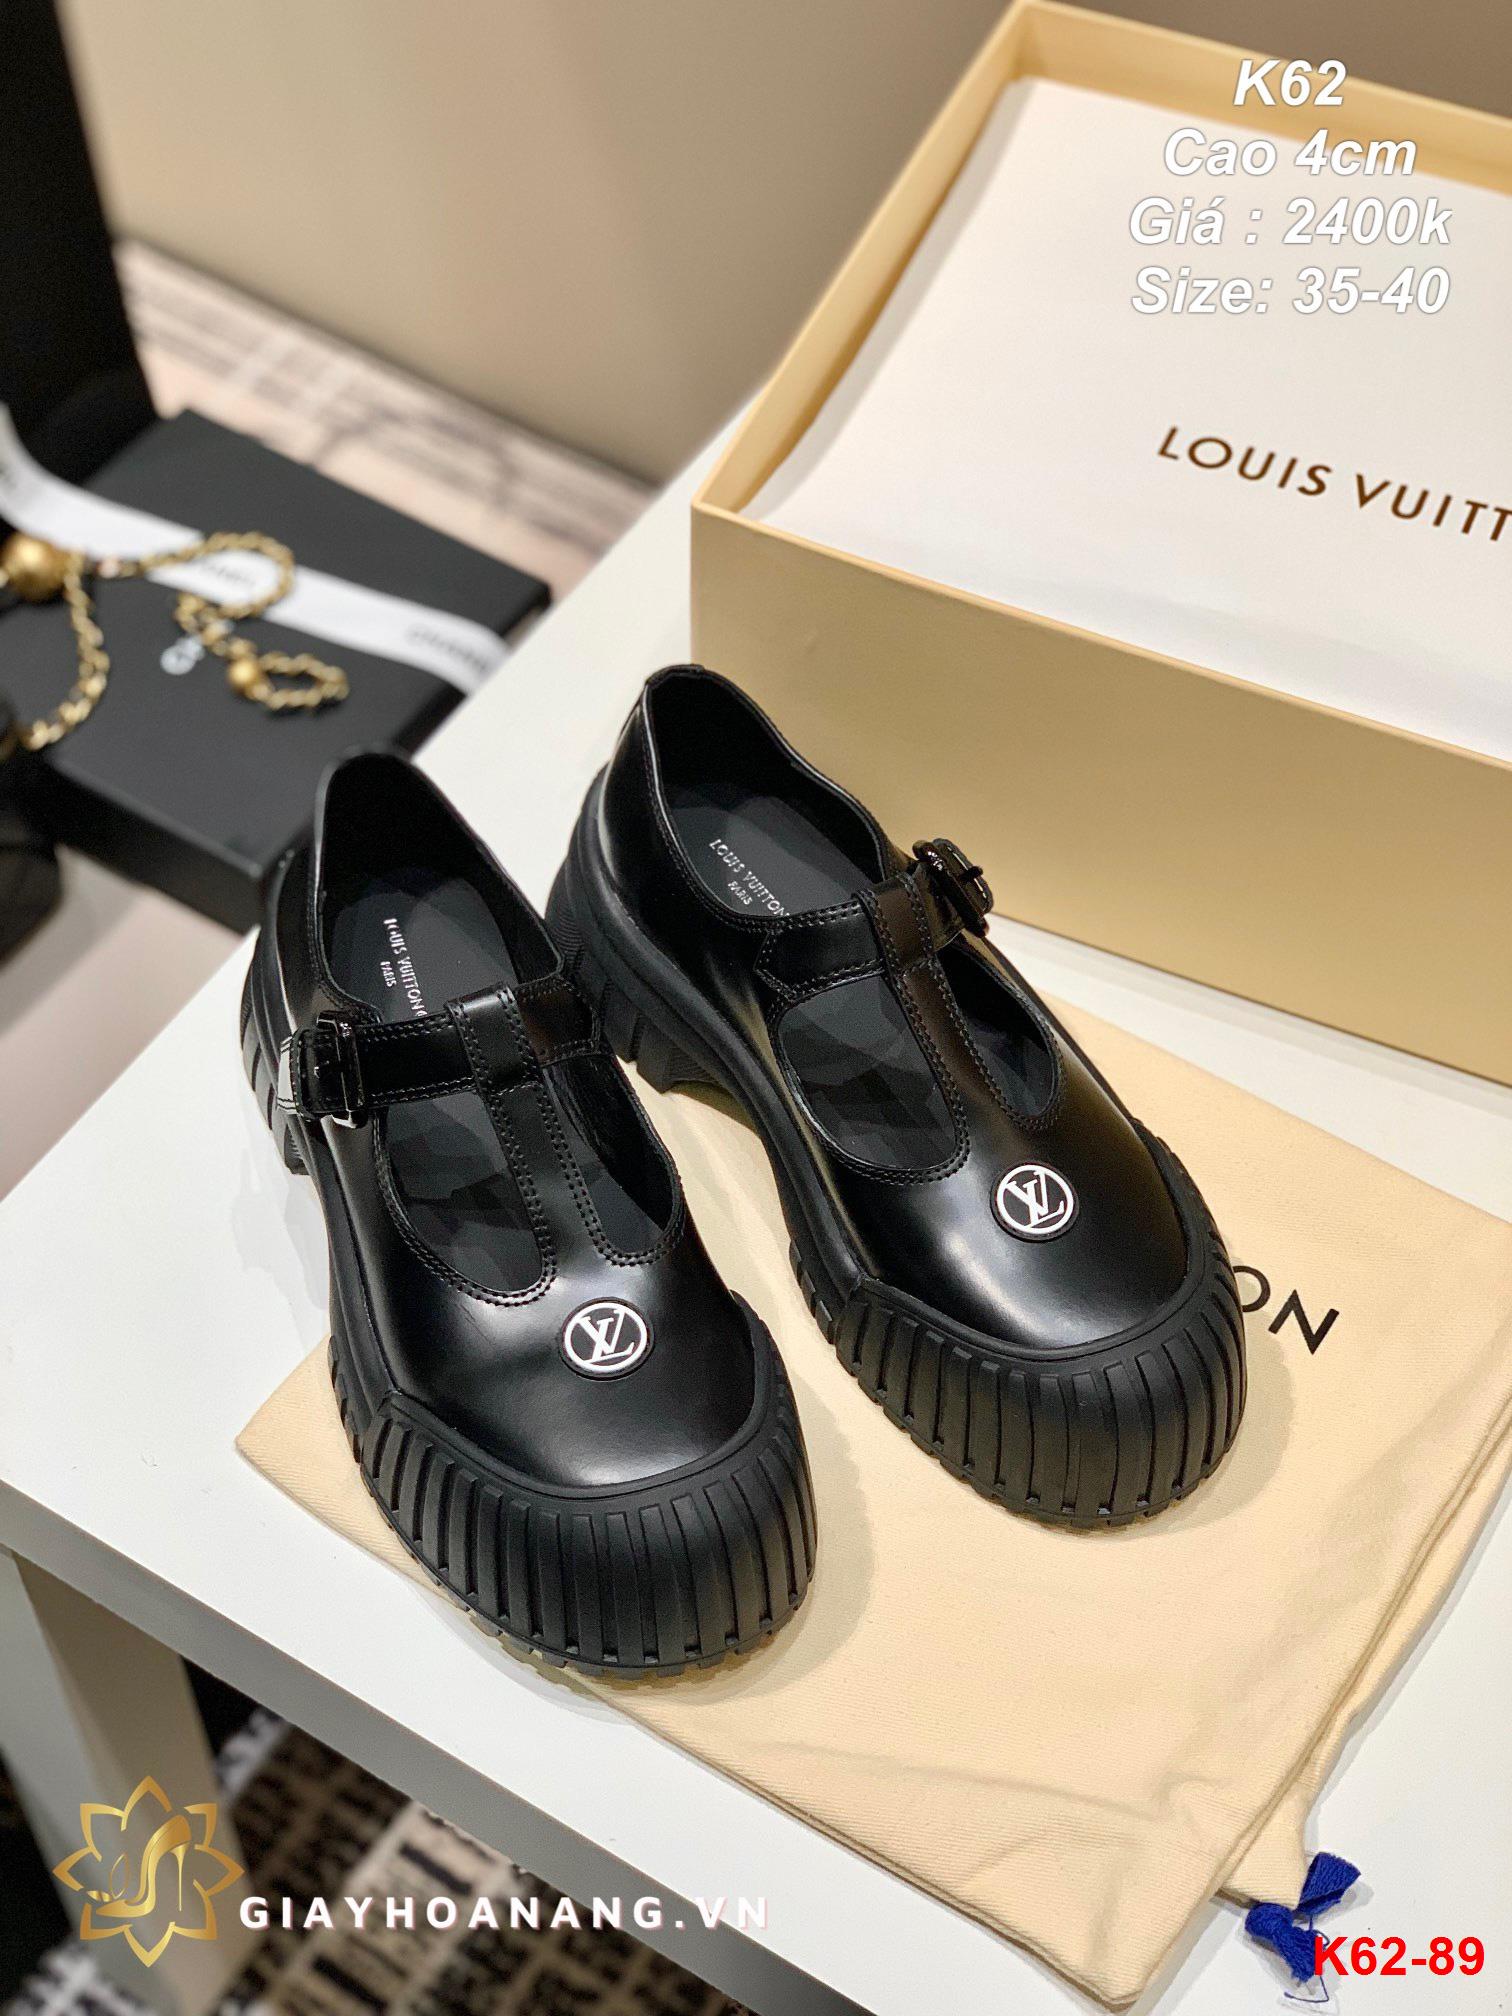 K62-89 Louis Vuitton giày cao 4cm siêu cấp